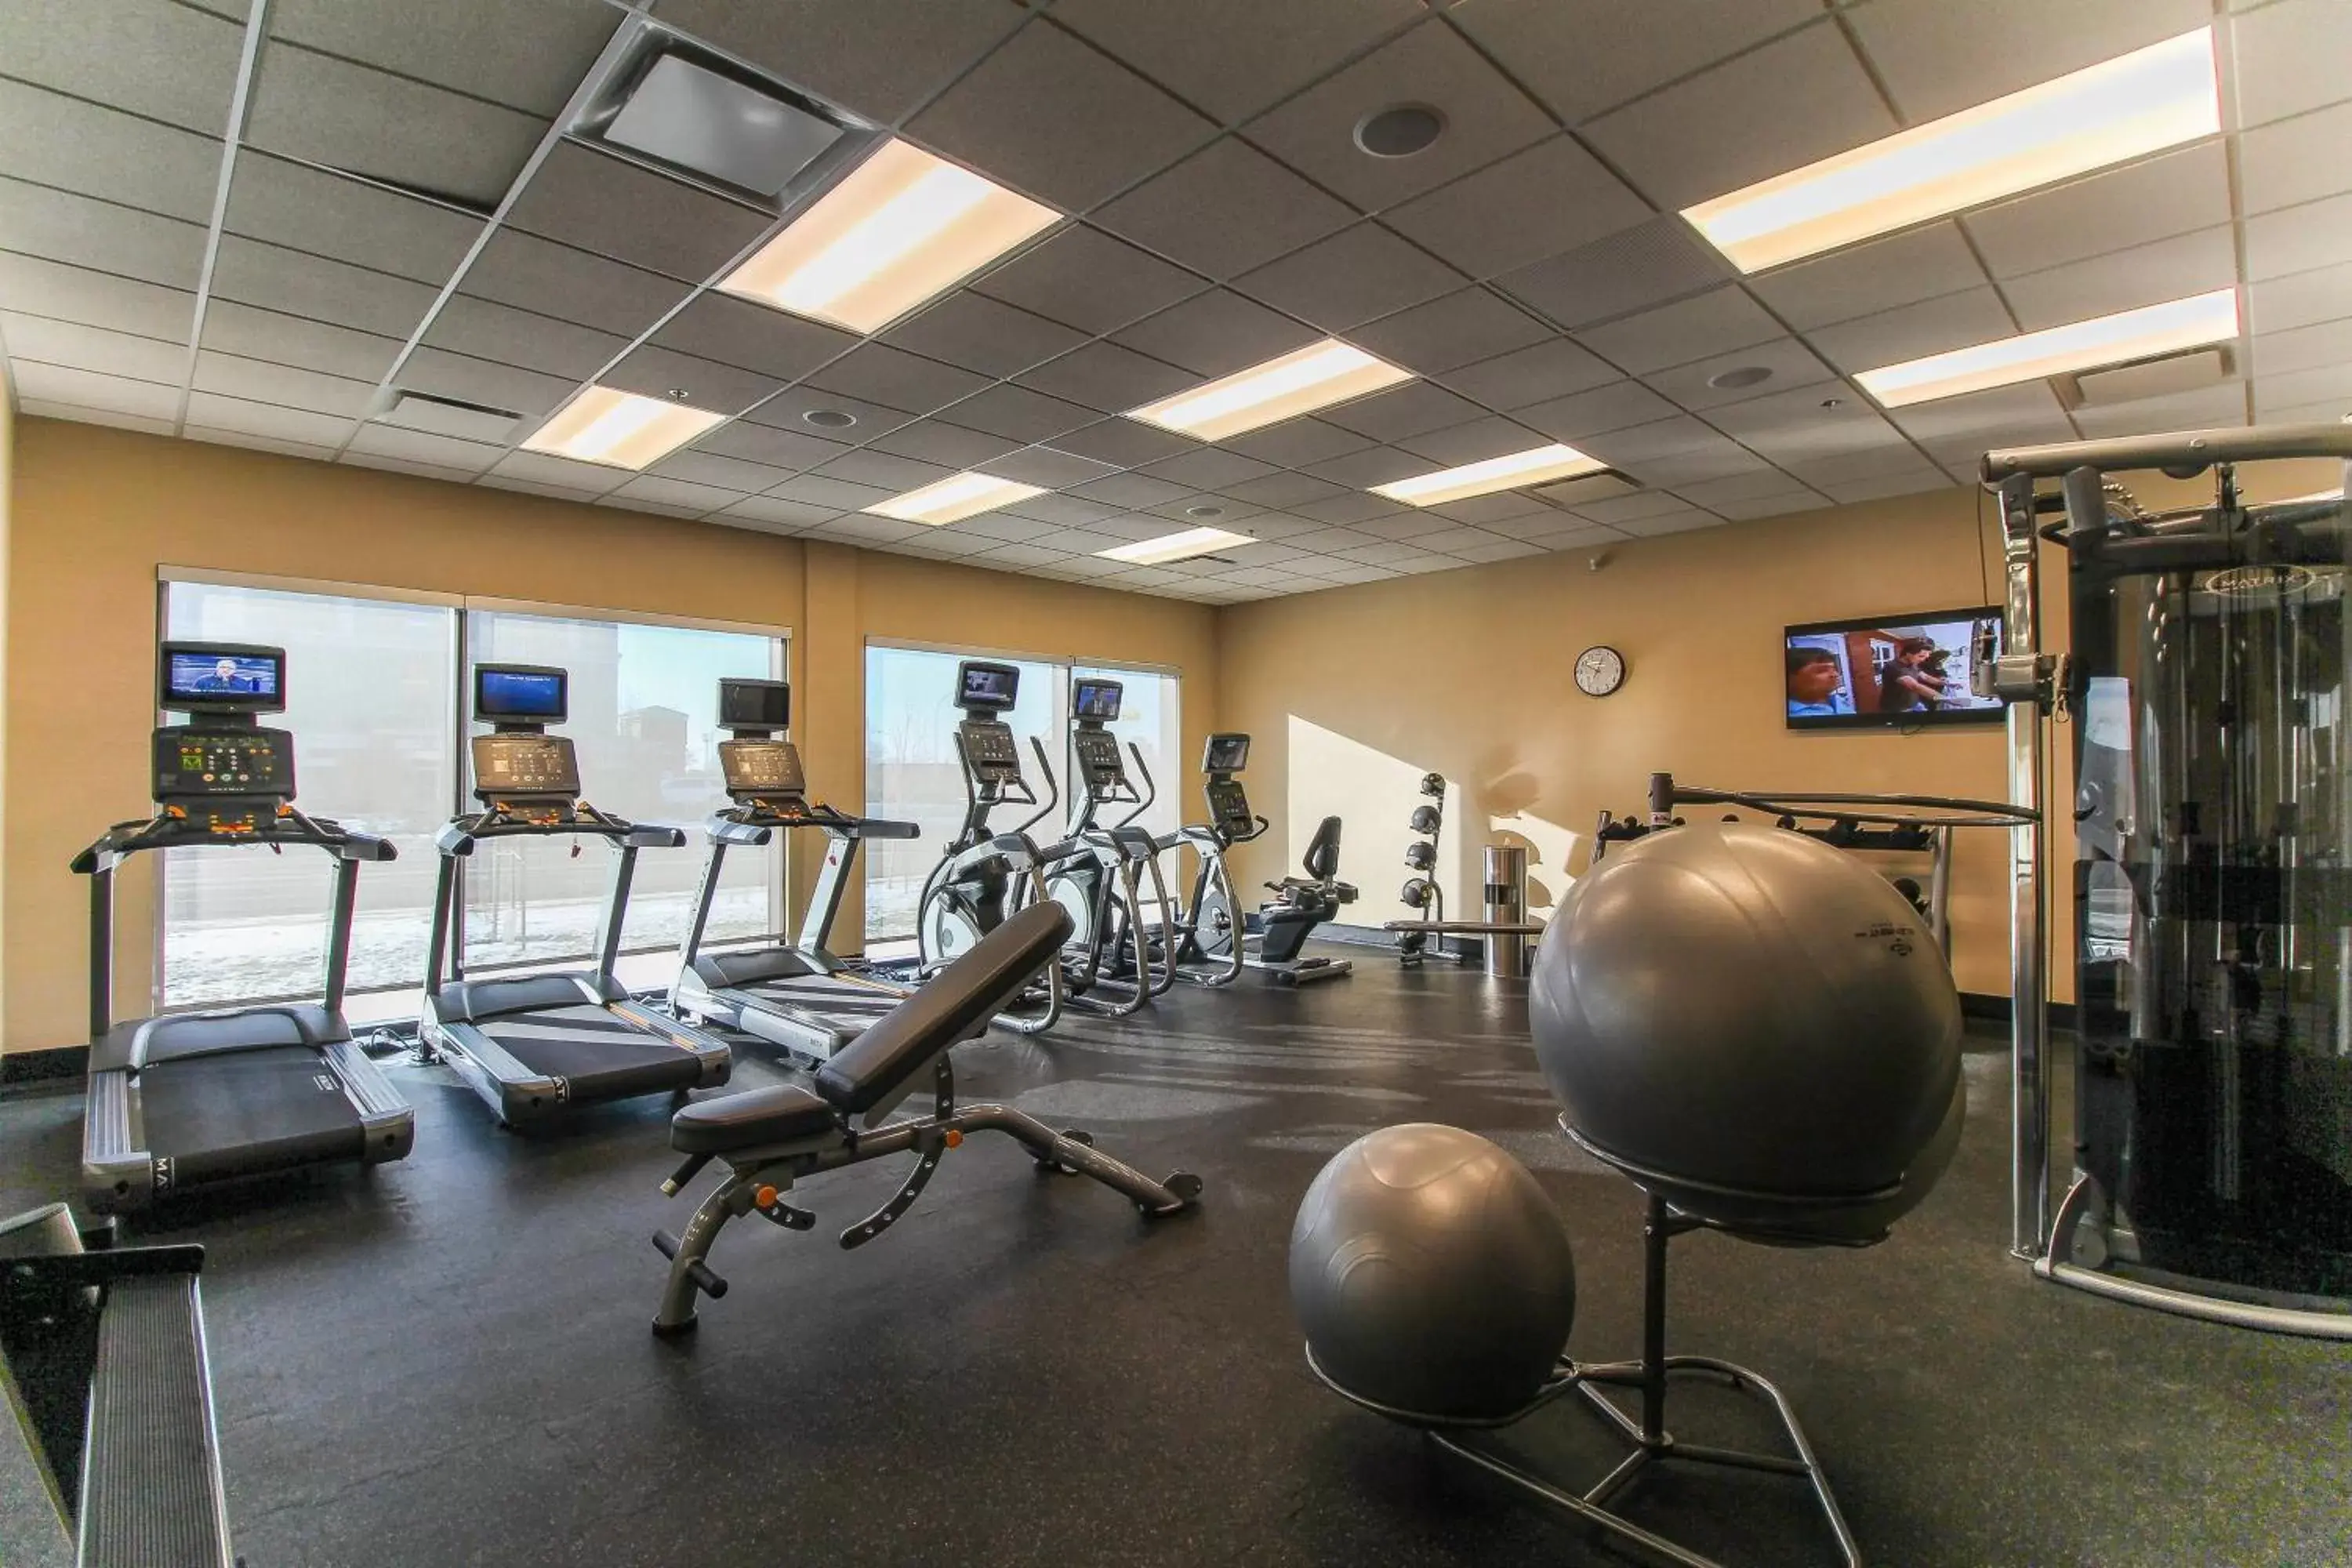 Fitness centre/facilities, Fitness Center/Facilities in Fairfield Inn & Suites by Marriott Regina